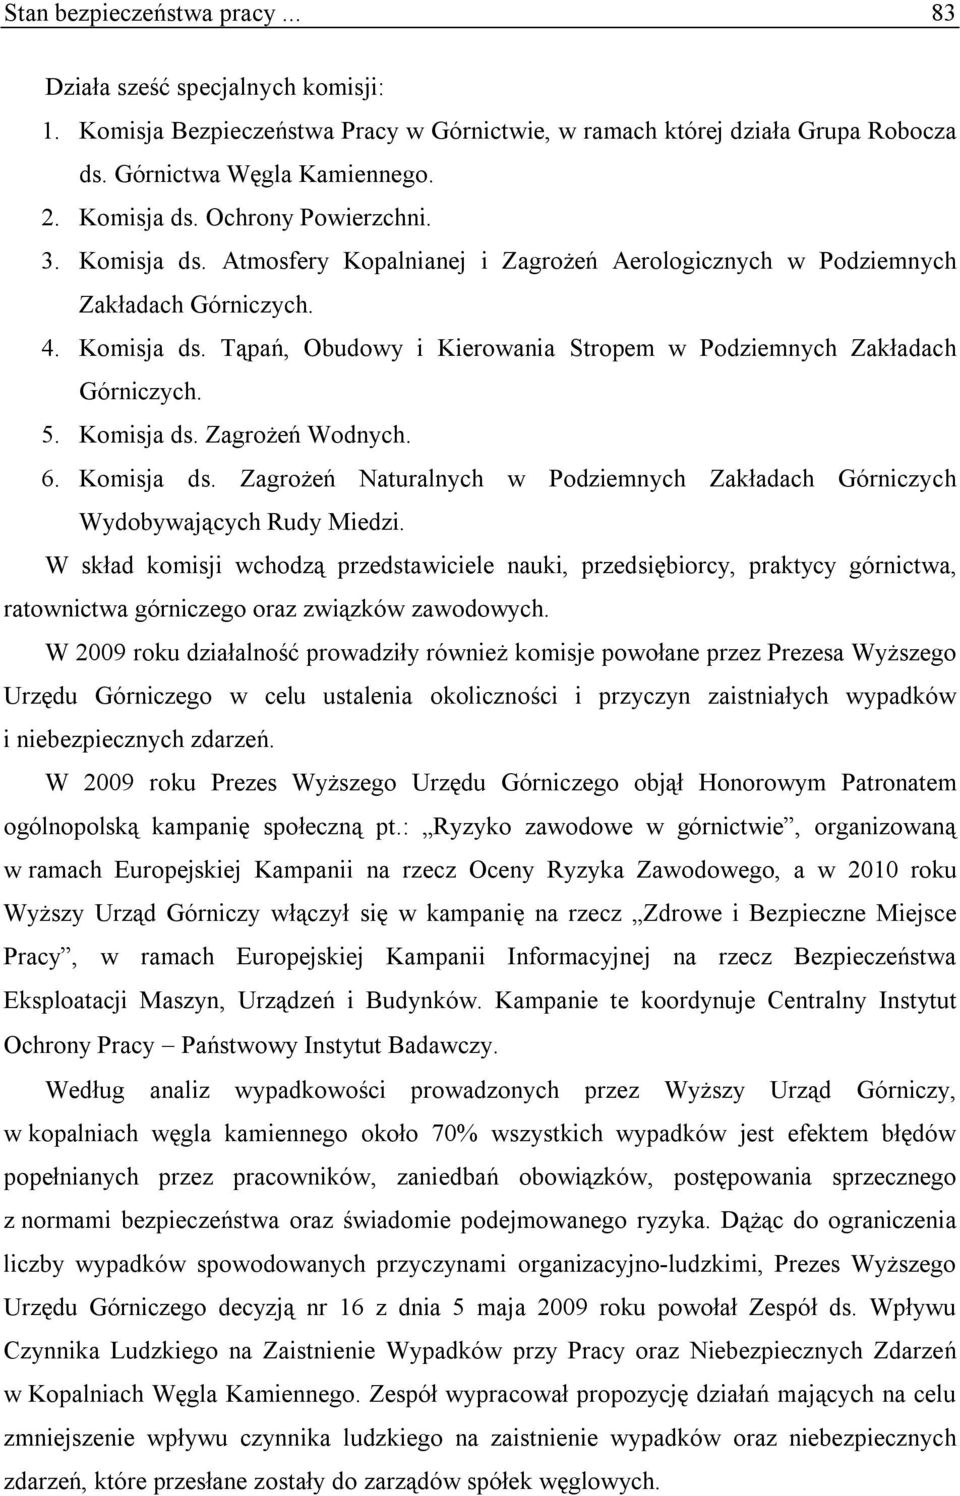 5. Komisja ds. Zagrożeń Wodnych. 6. Komisja ds. Zagrożeń Naturalnych w Podziemnych Zakładach Górniczych Wydobywających Rudy Miedzi.